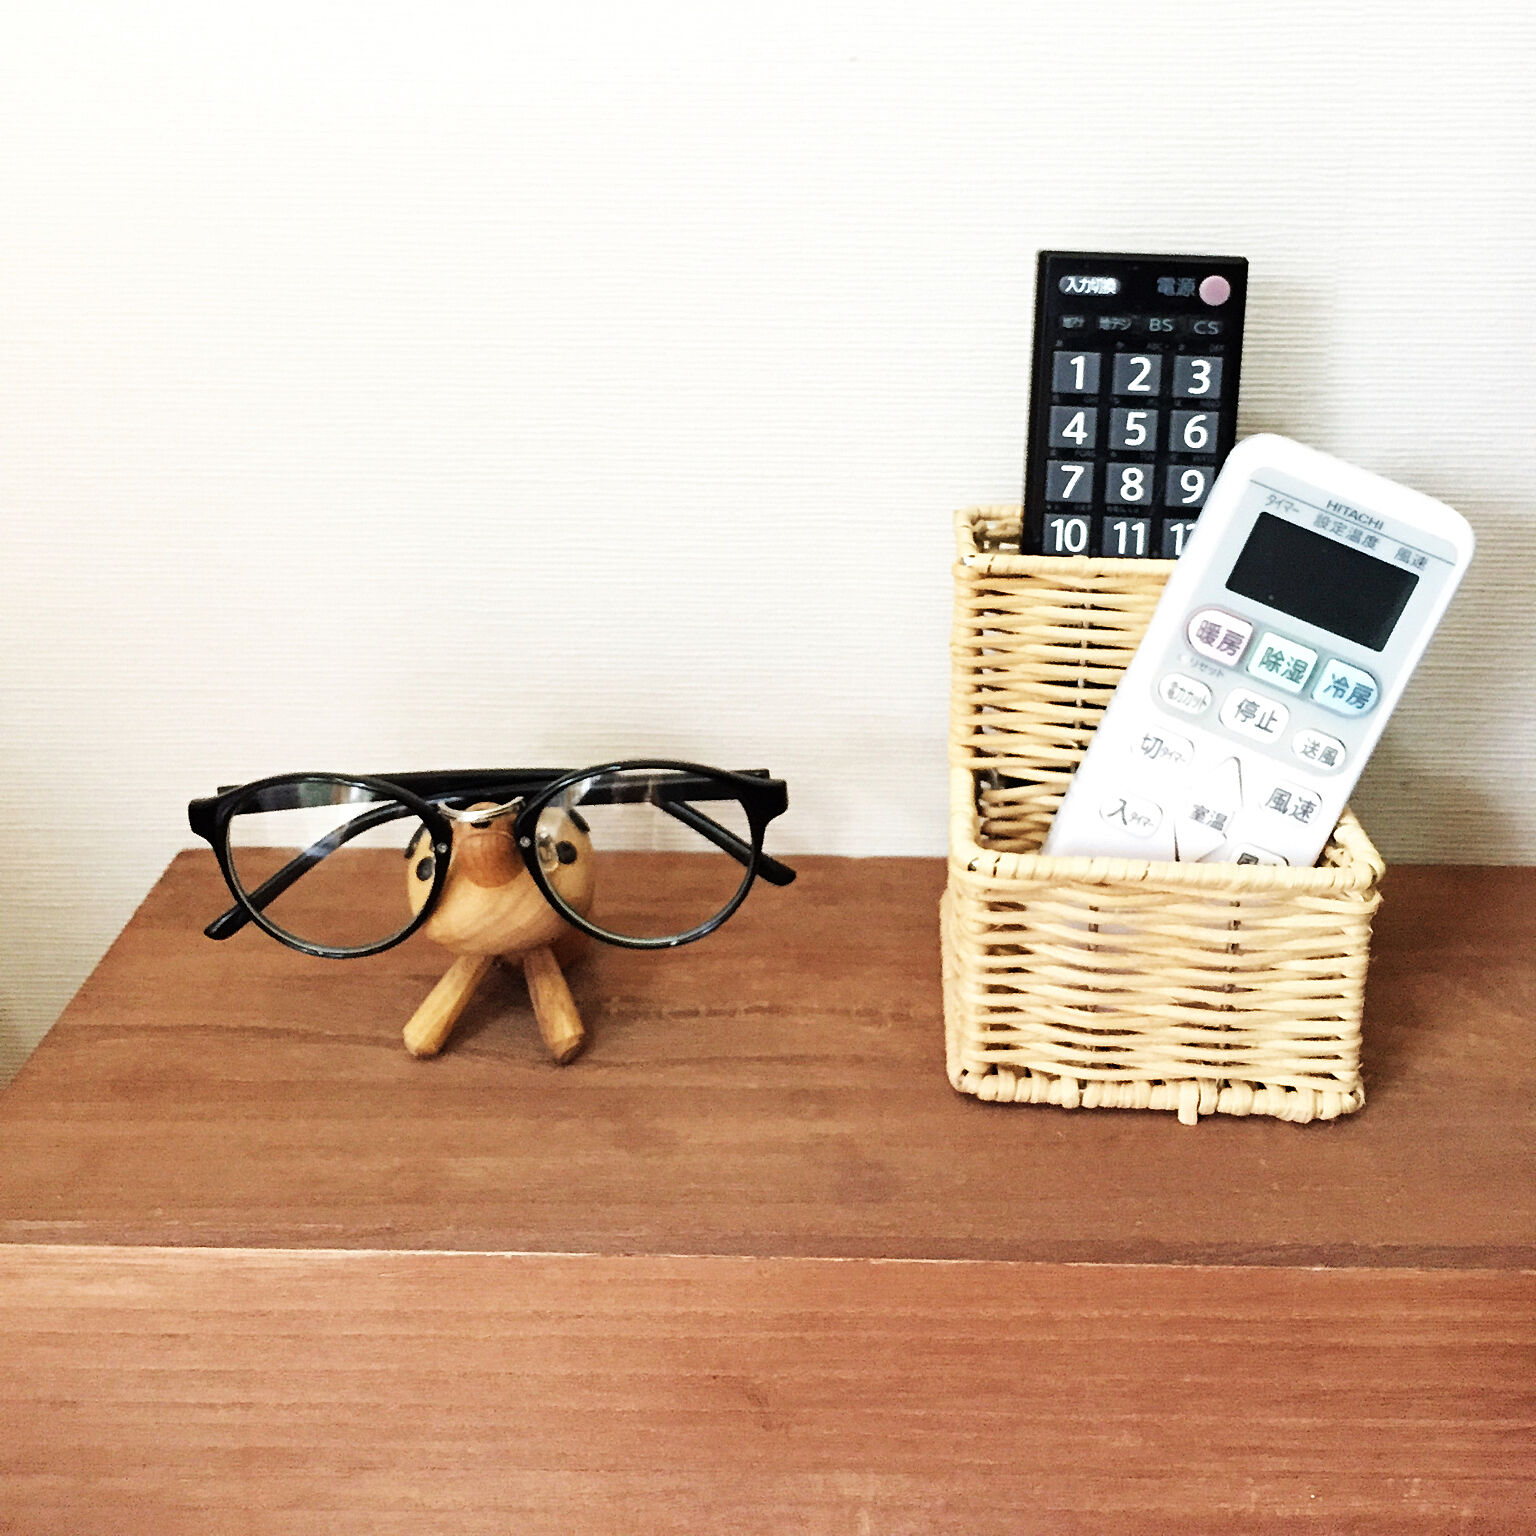 置き場所を決めてすっきり メガネの収納アイデア10選 Roomclip Mag 暮らしとインテリアのwebマガジン